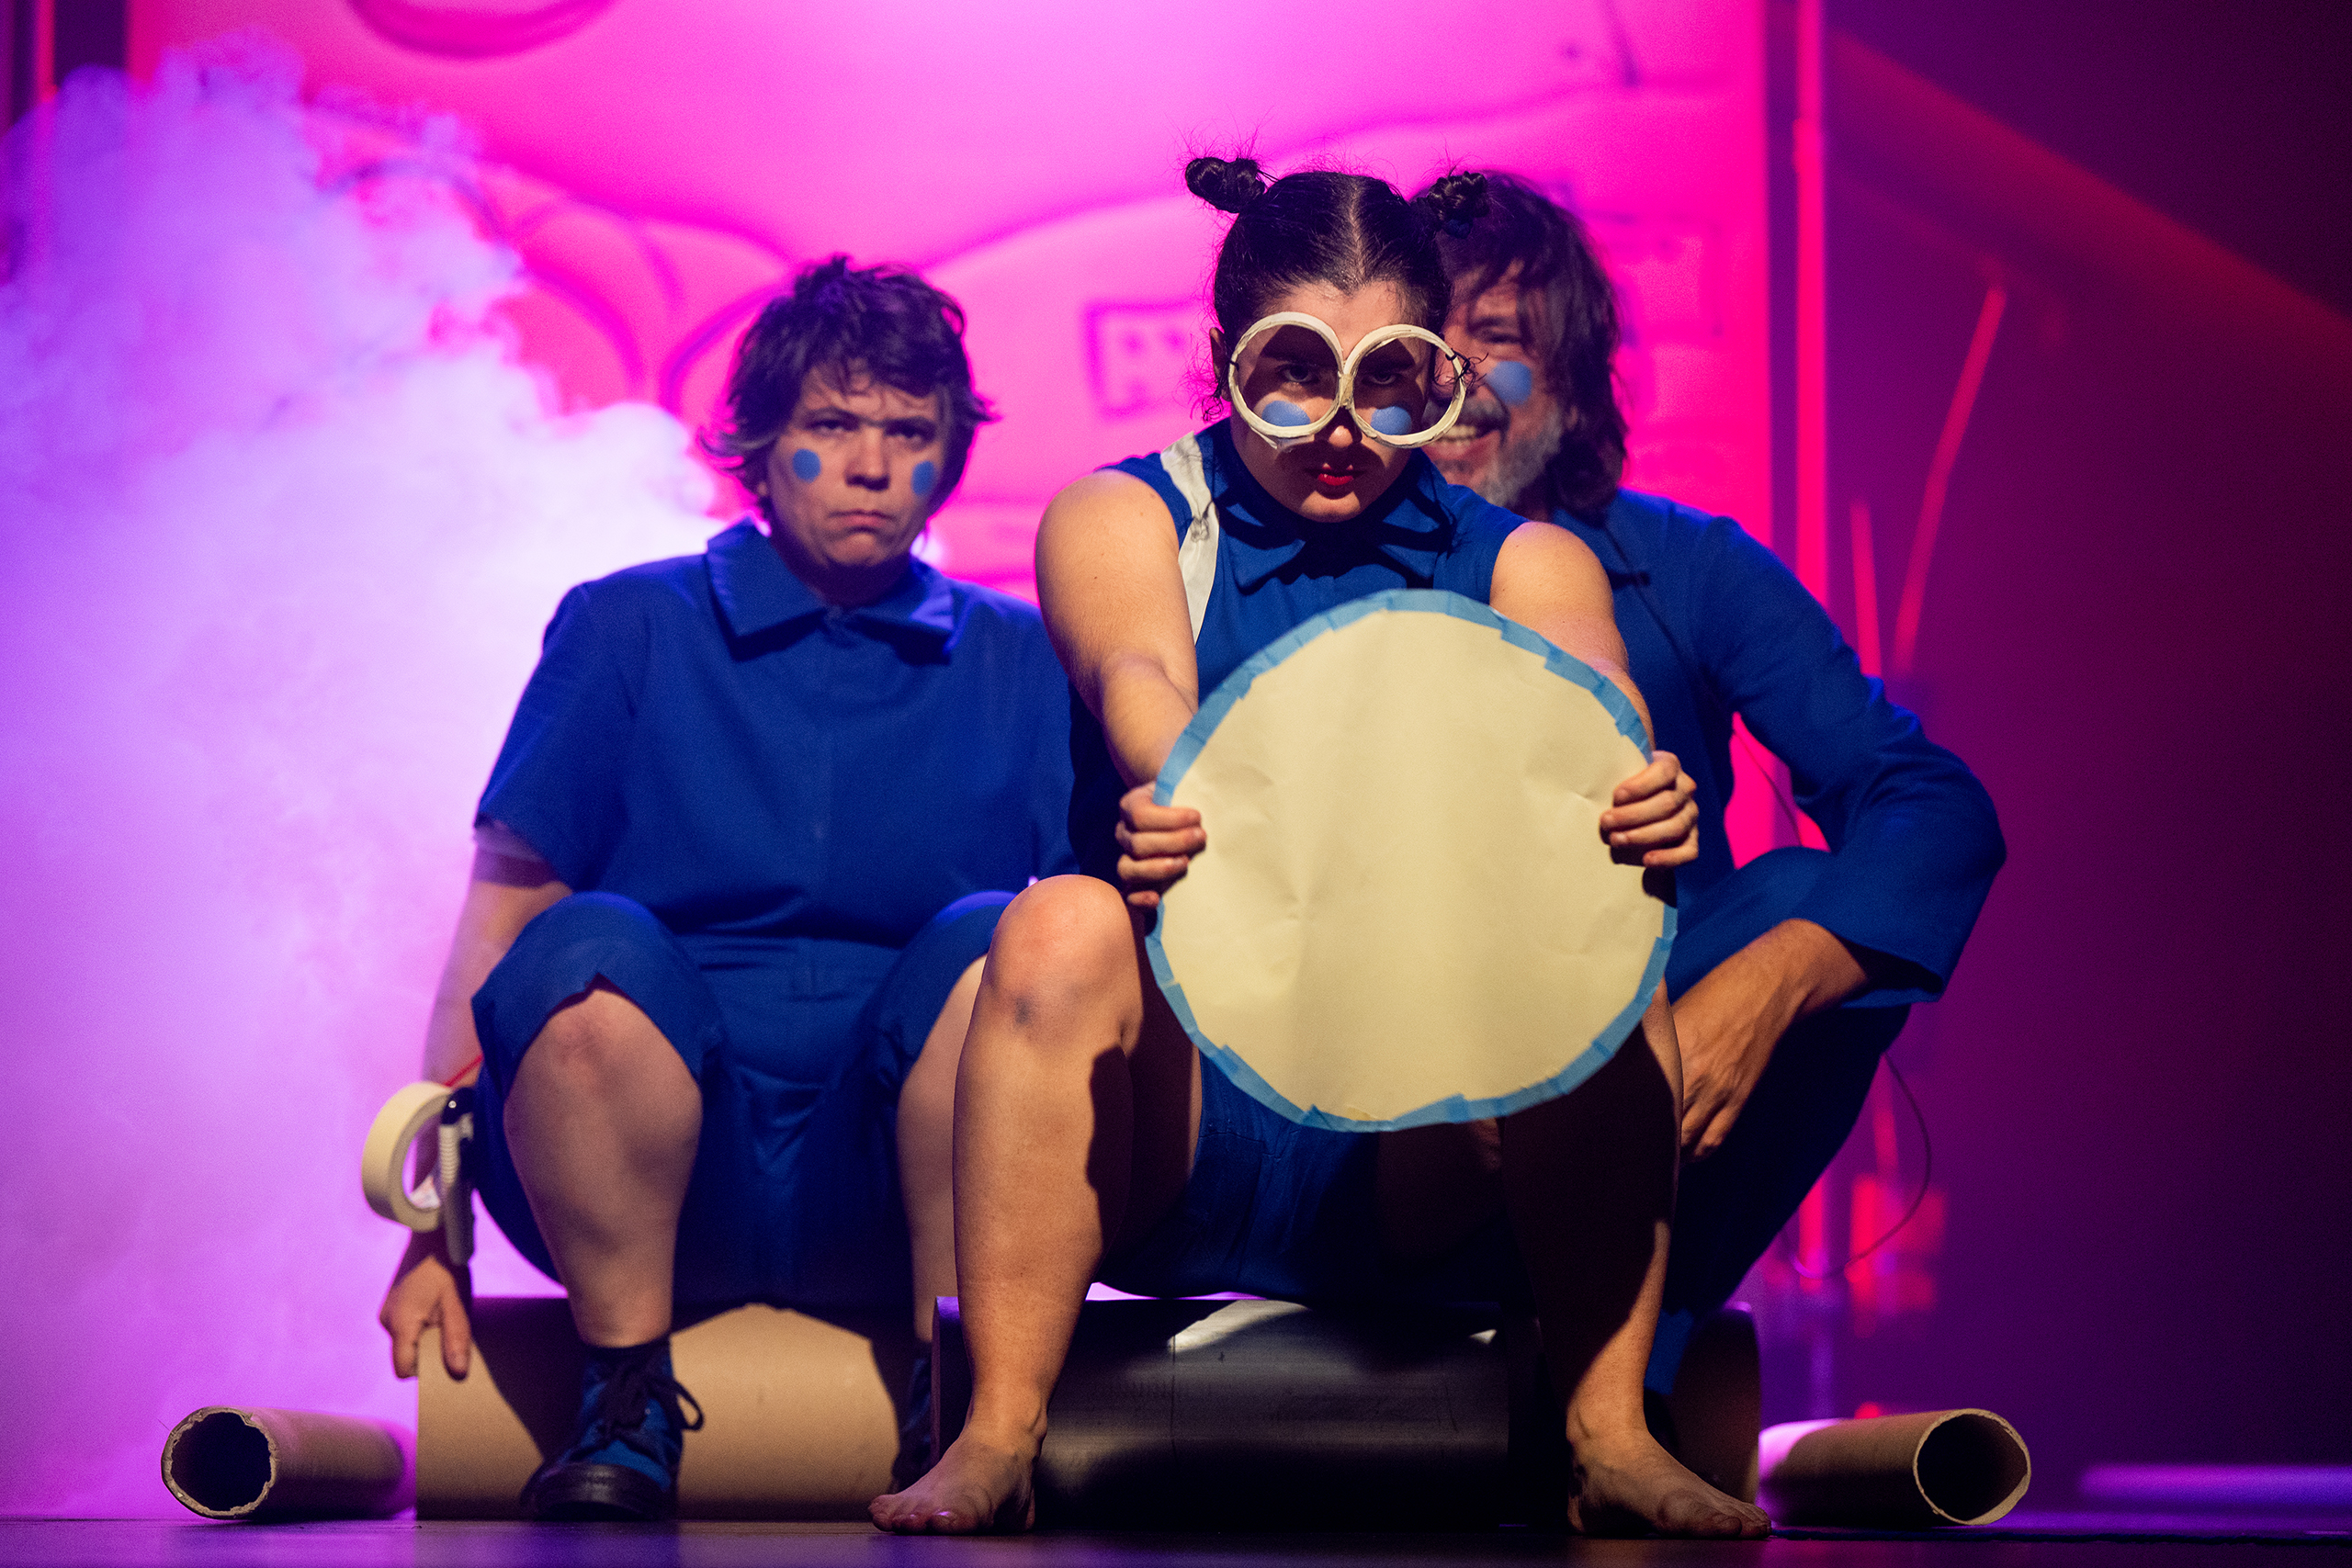 Espectáculo Teatro Lu.Ca. Roda Viva, a menina e o circulo
©Enric Vives-Rubio